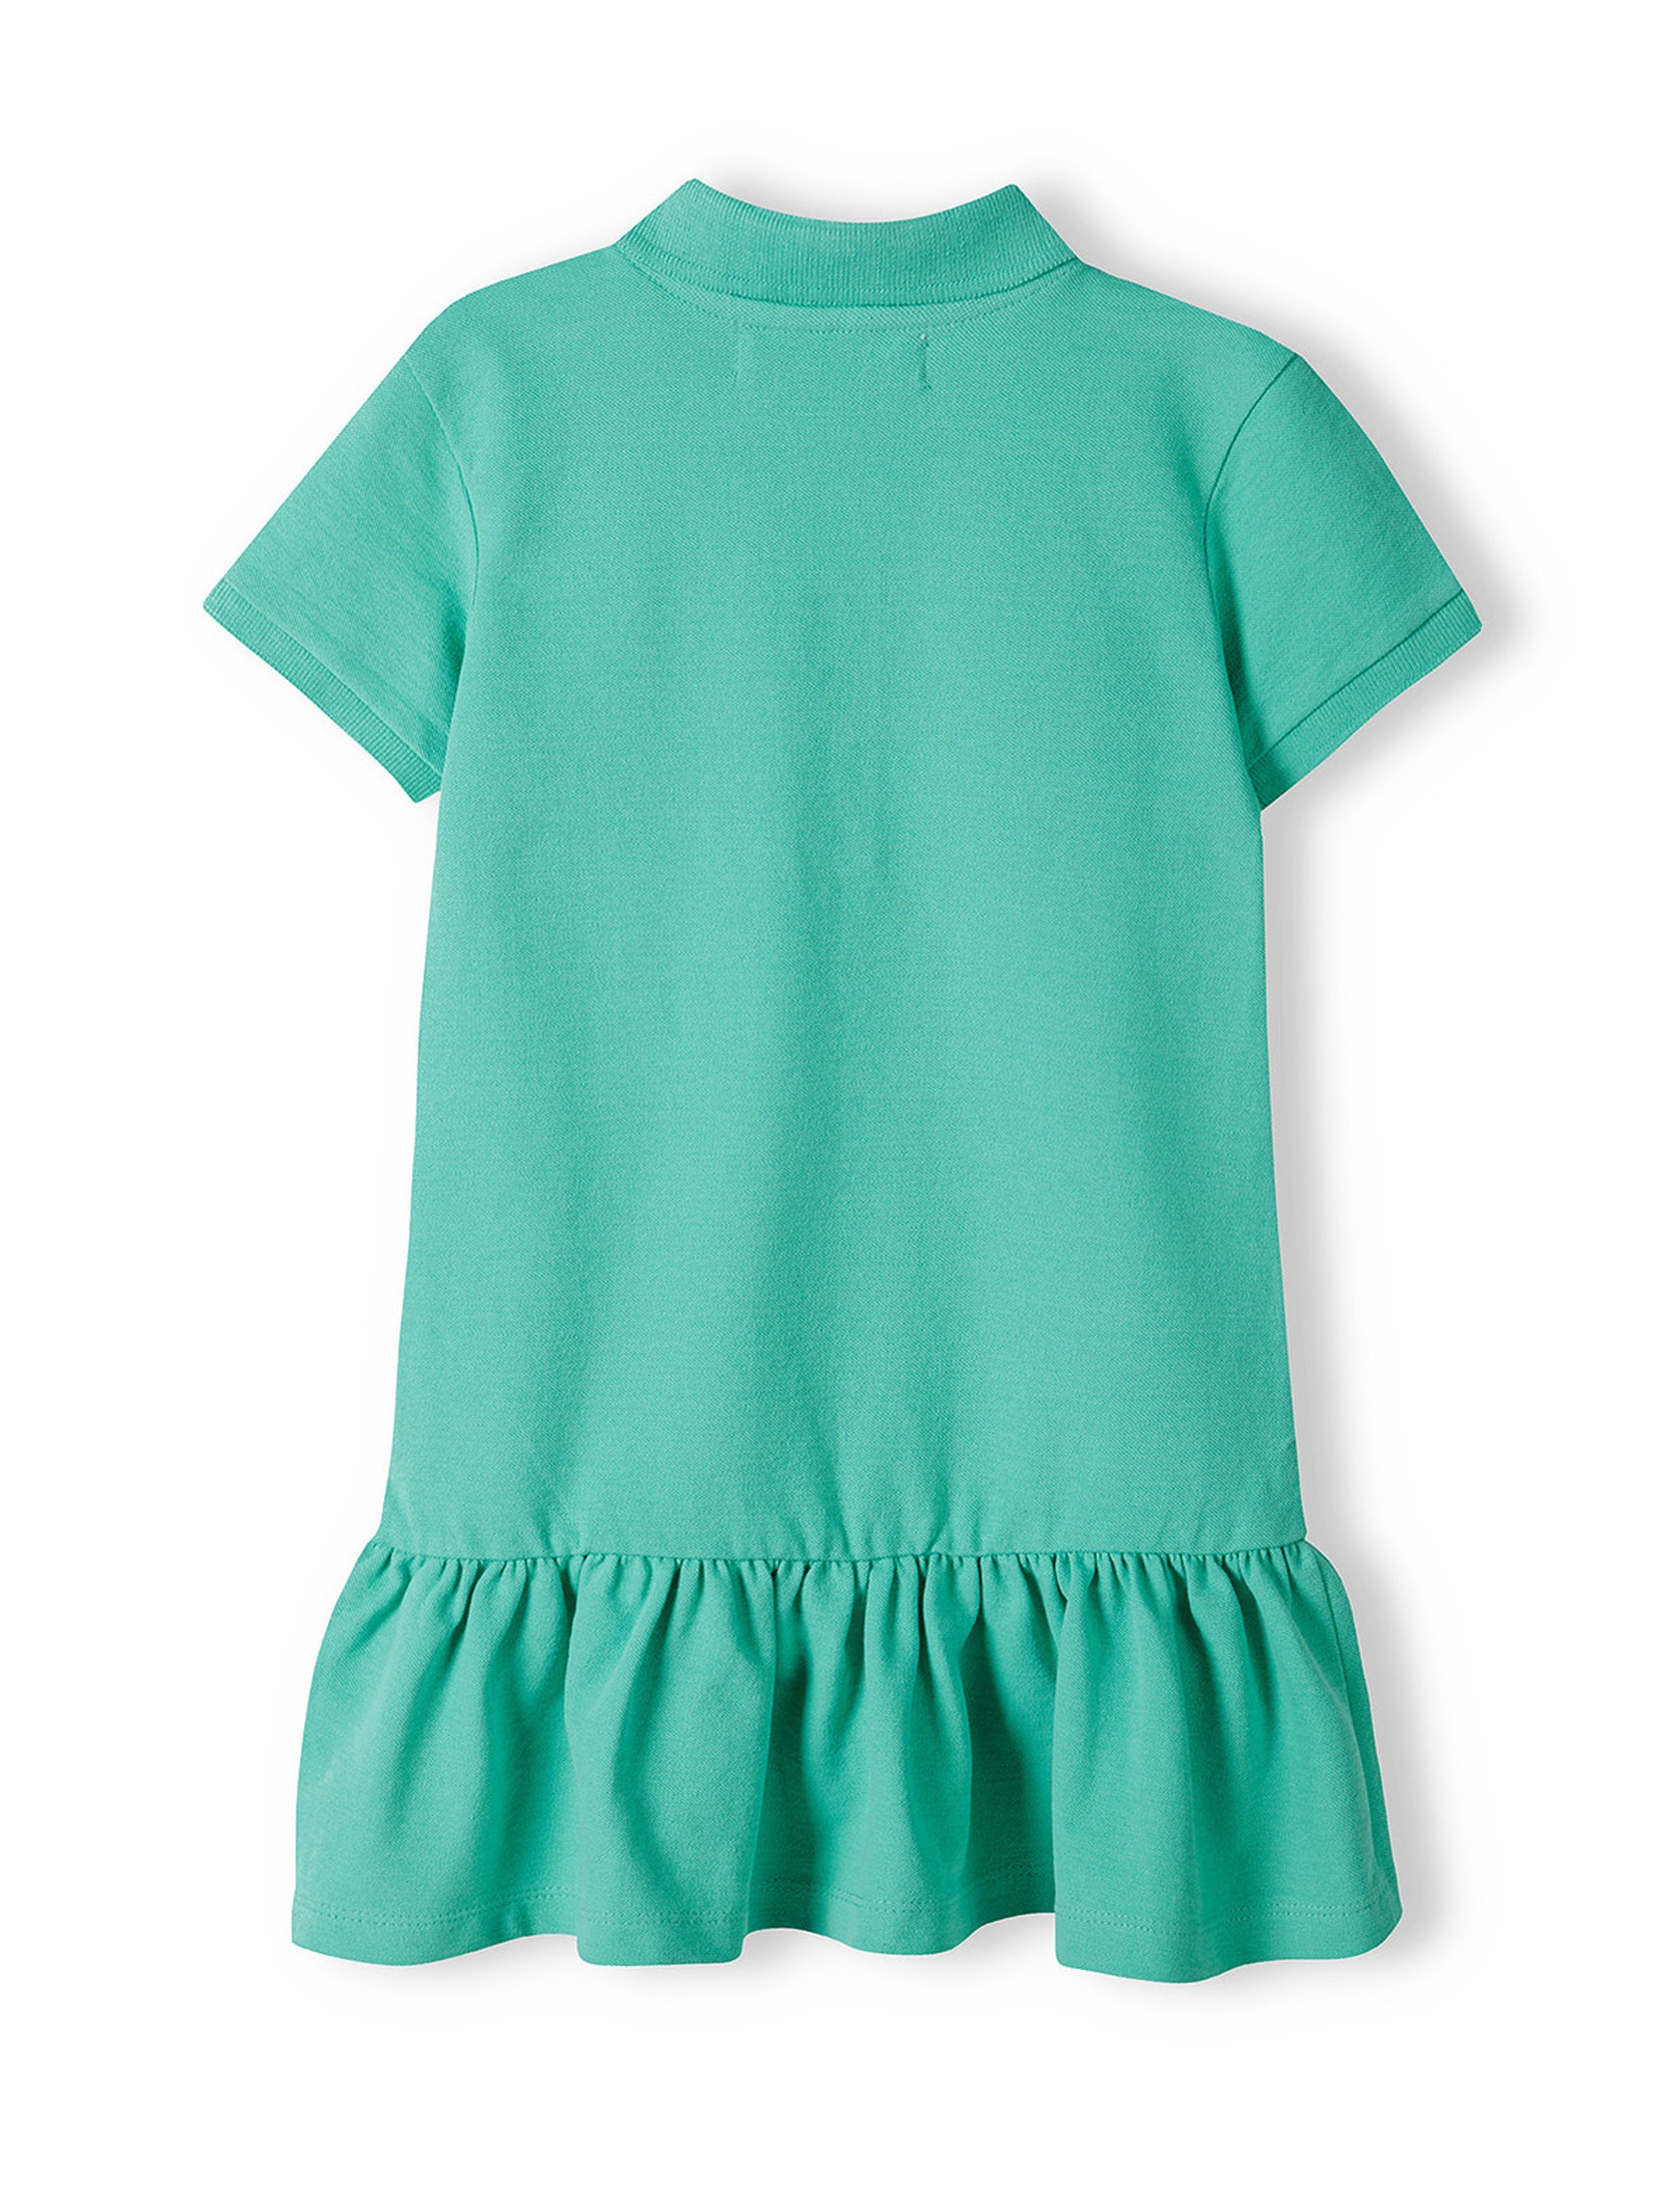 Zielona sukienka polo z krókim rękawem dla dziewczynki